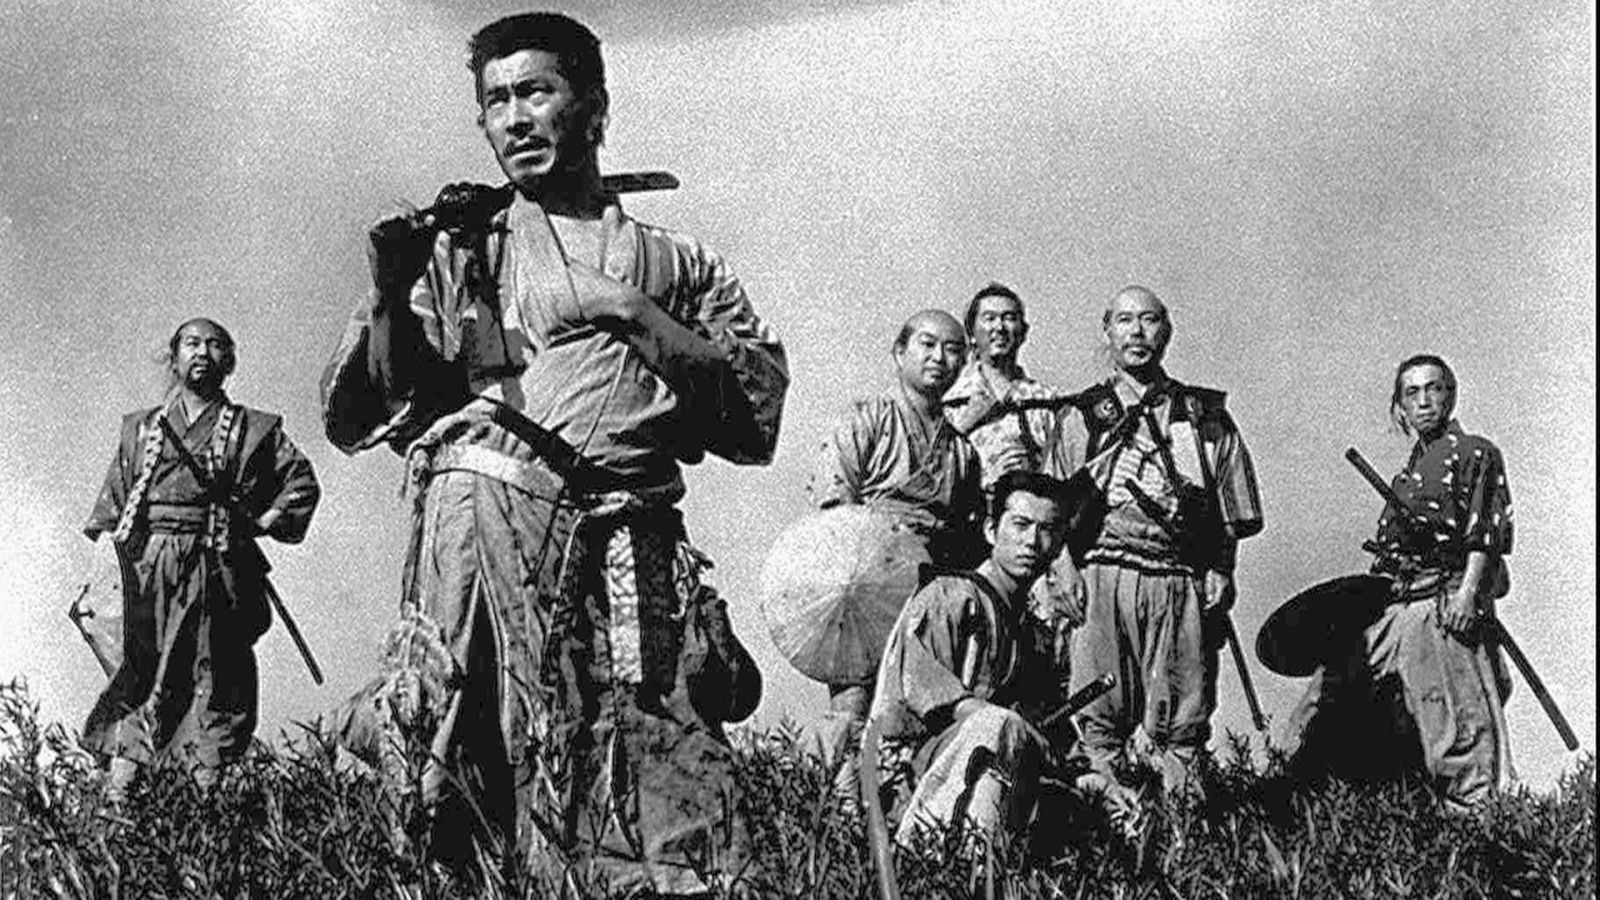 Días de cine clásico - Los siete samuráis